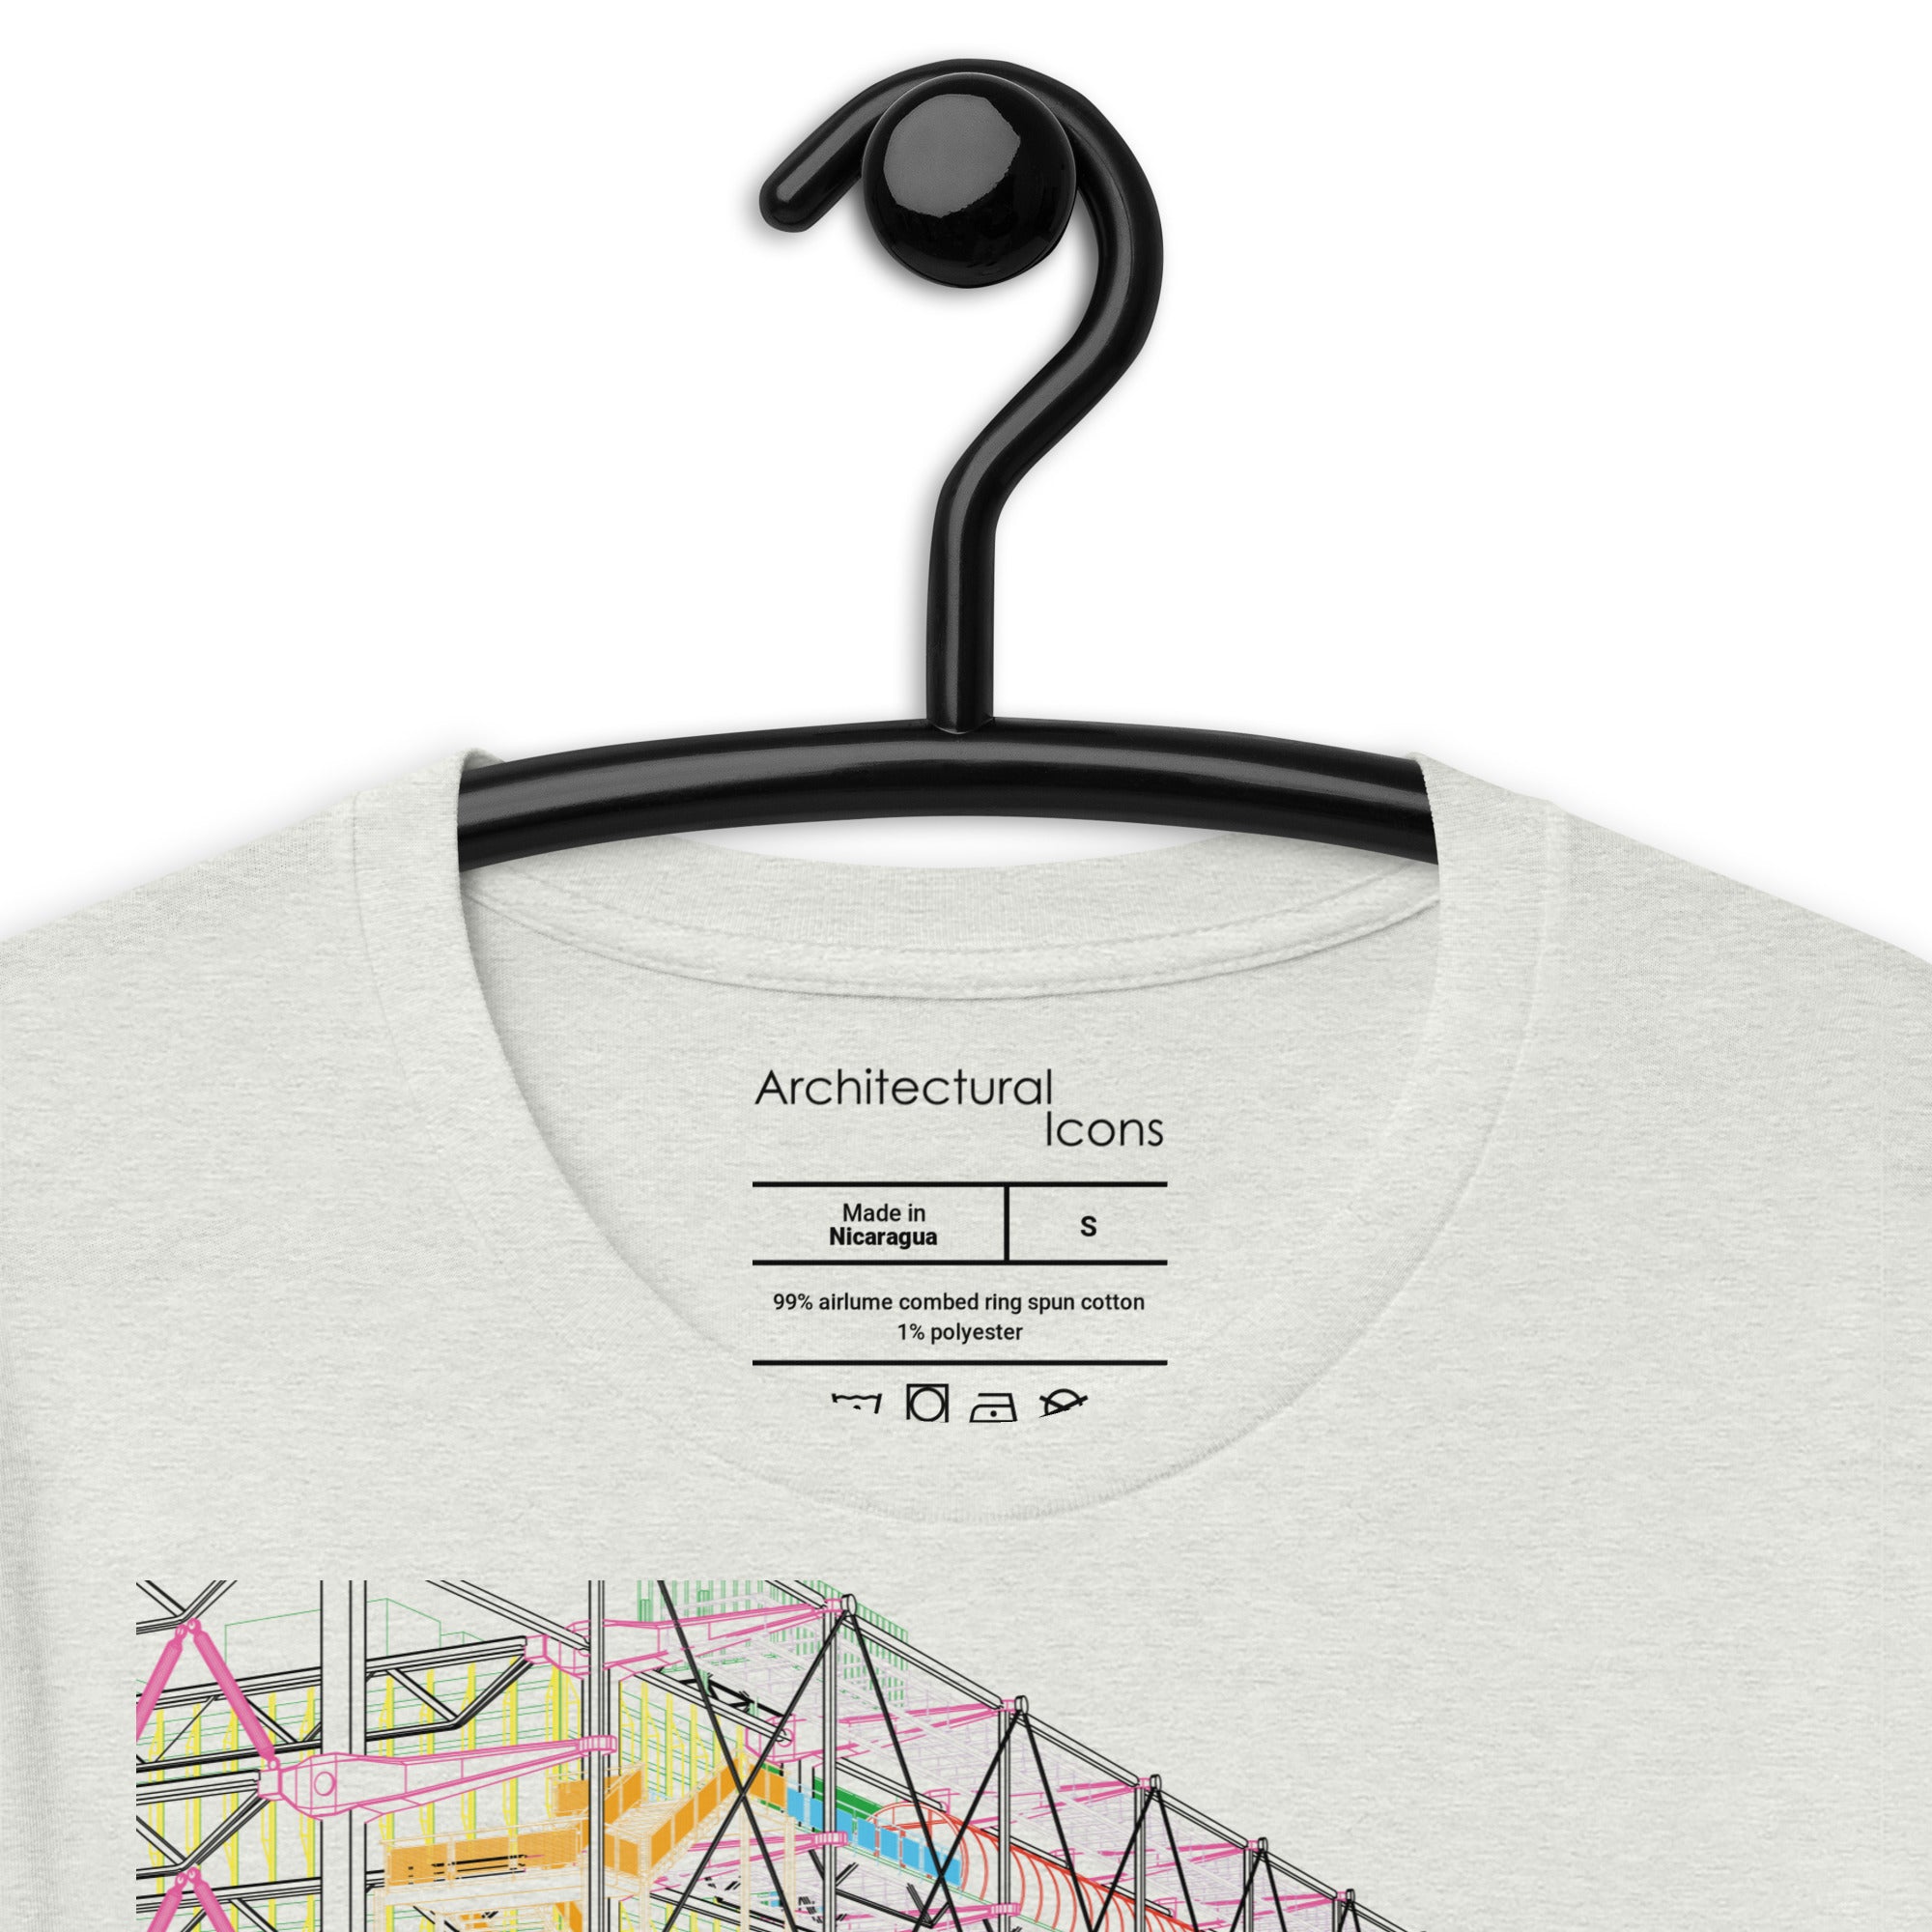 Pompidou Centre Unisex T-Shirts